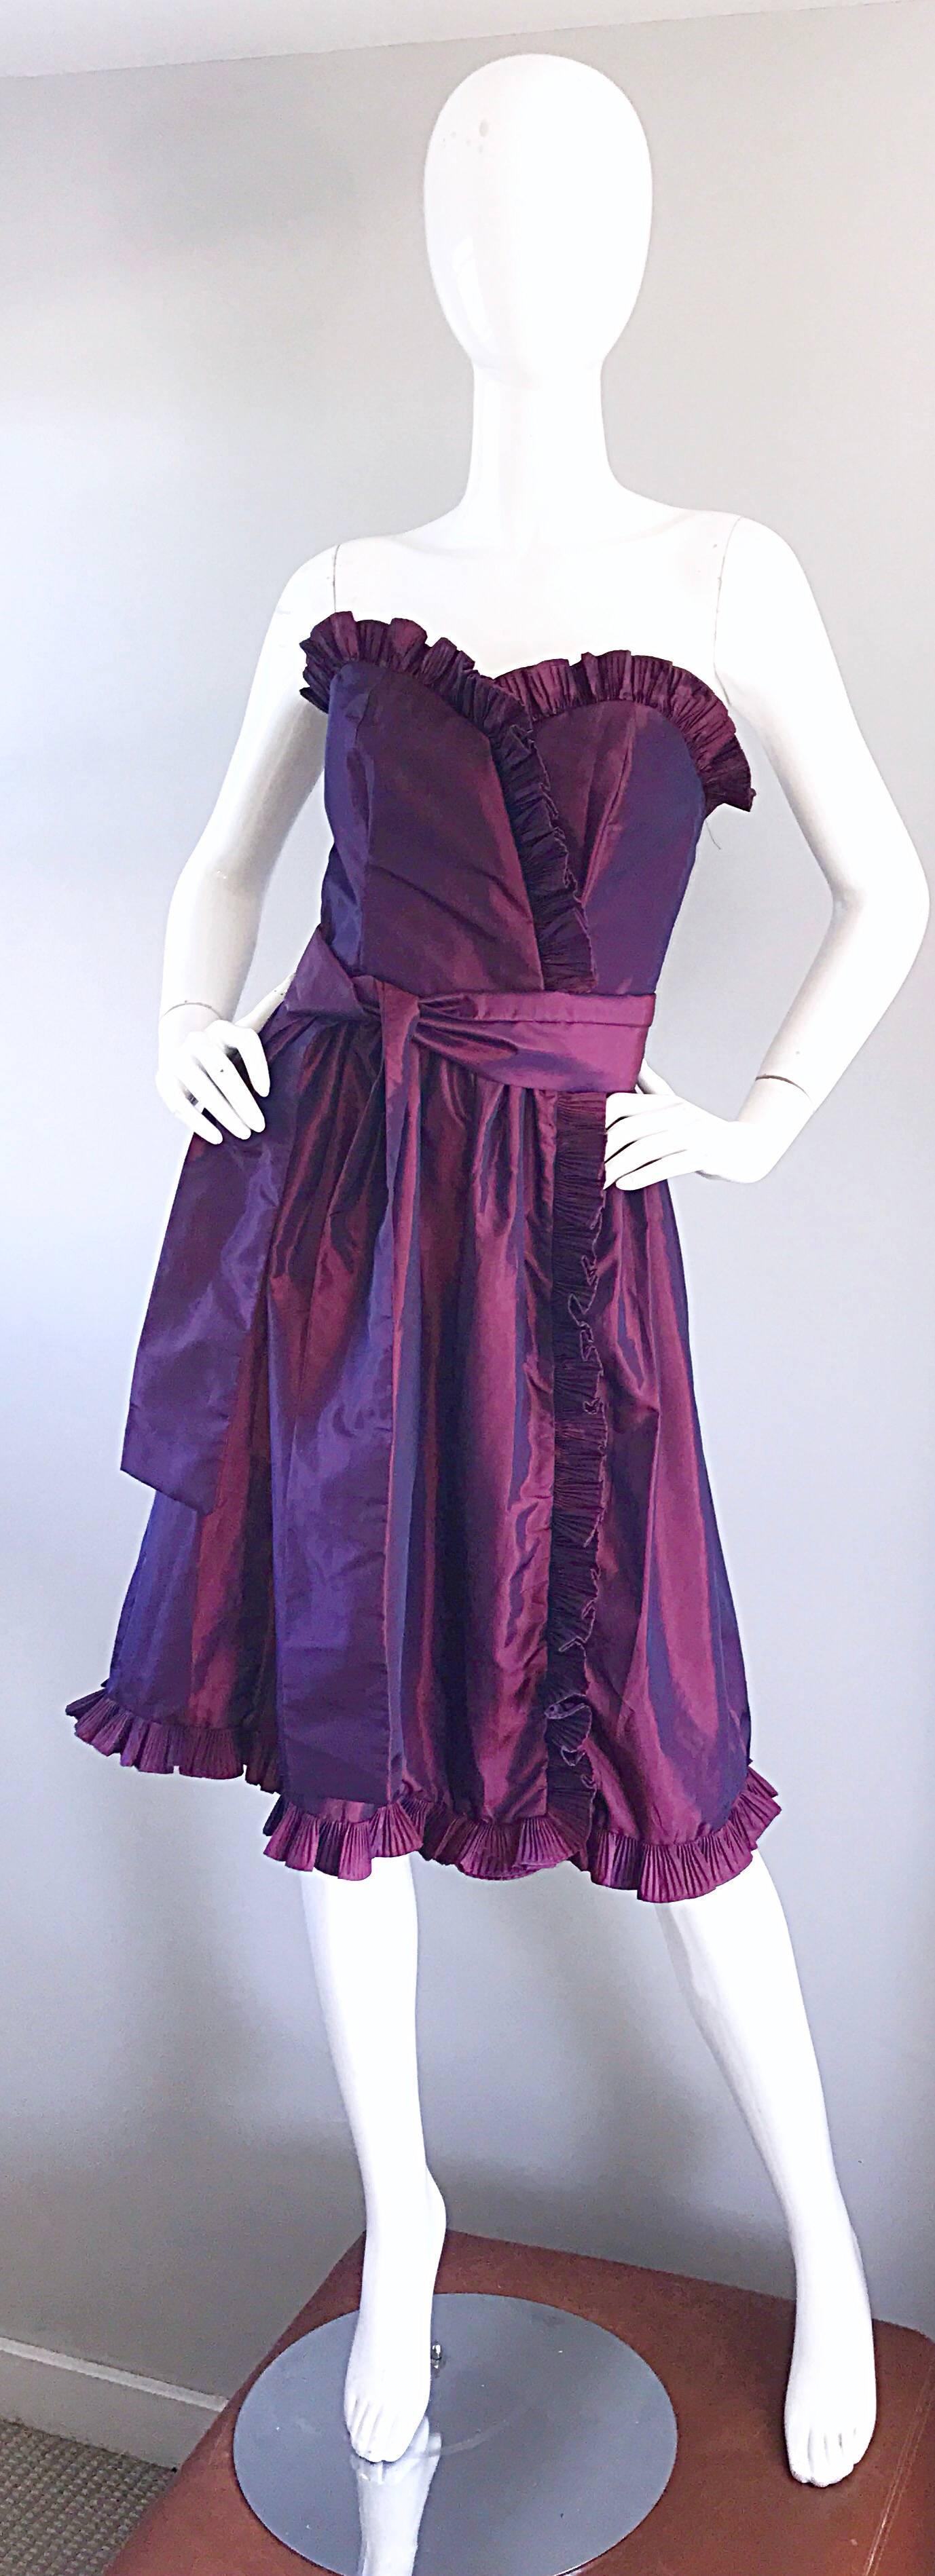 Incroyable robe bustier en taffetas de soie violette VICTOR COSTA pour NEIMAN MARCUS des années 80/80 et ceinture ceinture ! Elle présente un volant plissé en accordéon le long du corsage, sur le côté avant et à l'ourlet. Un corsage ajusté et